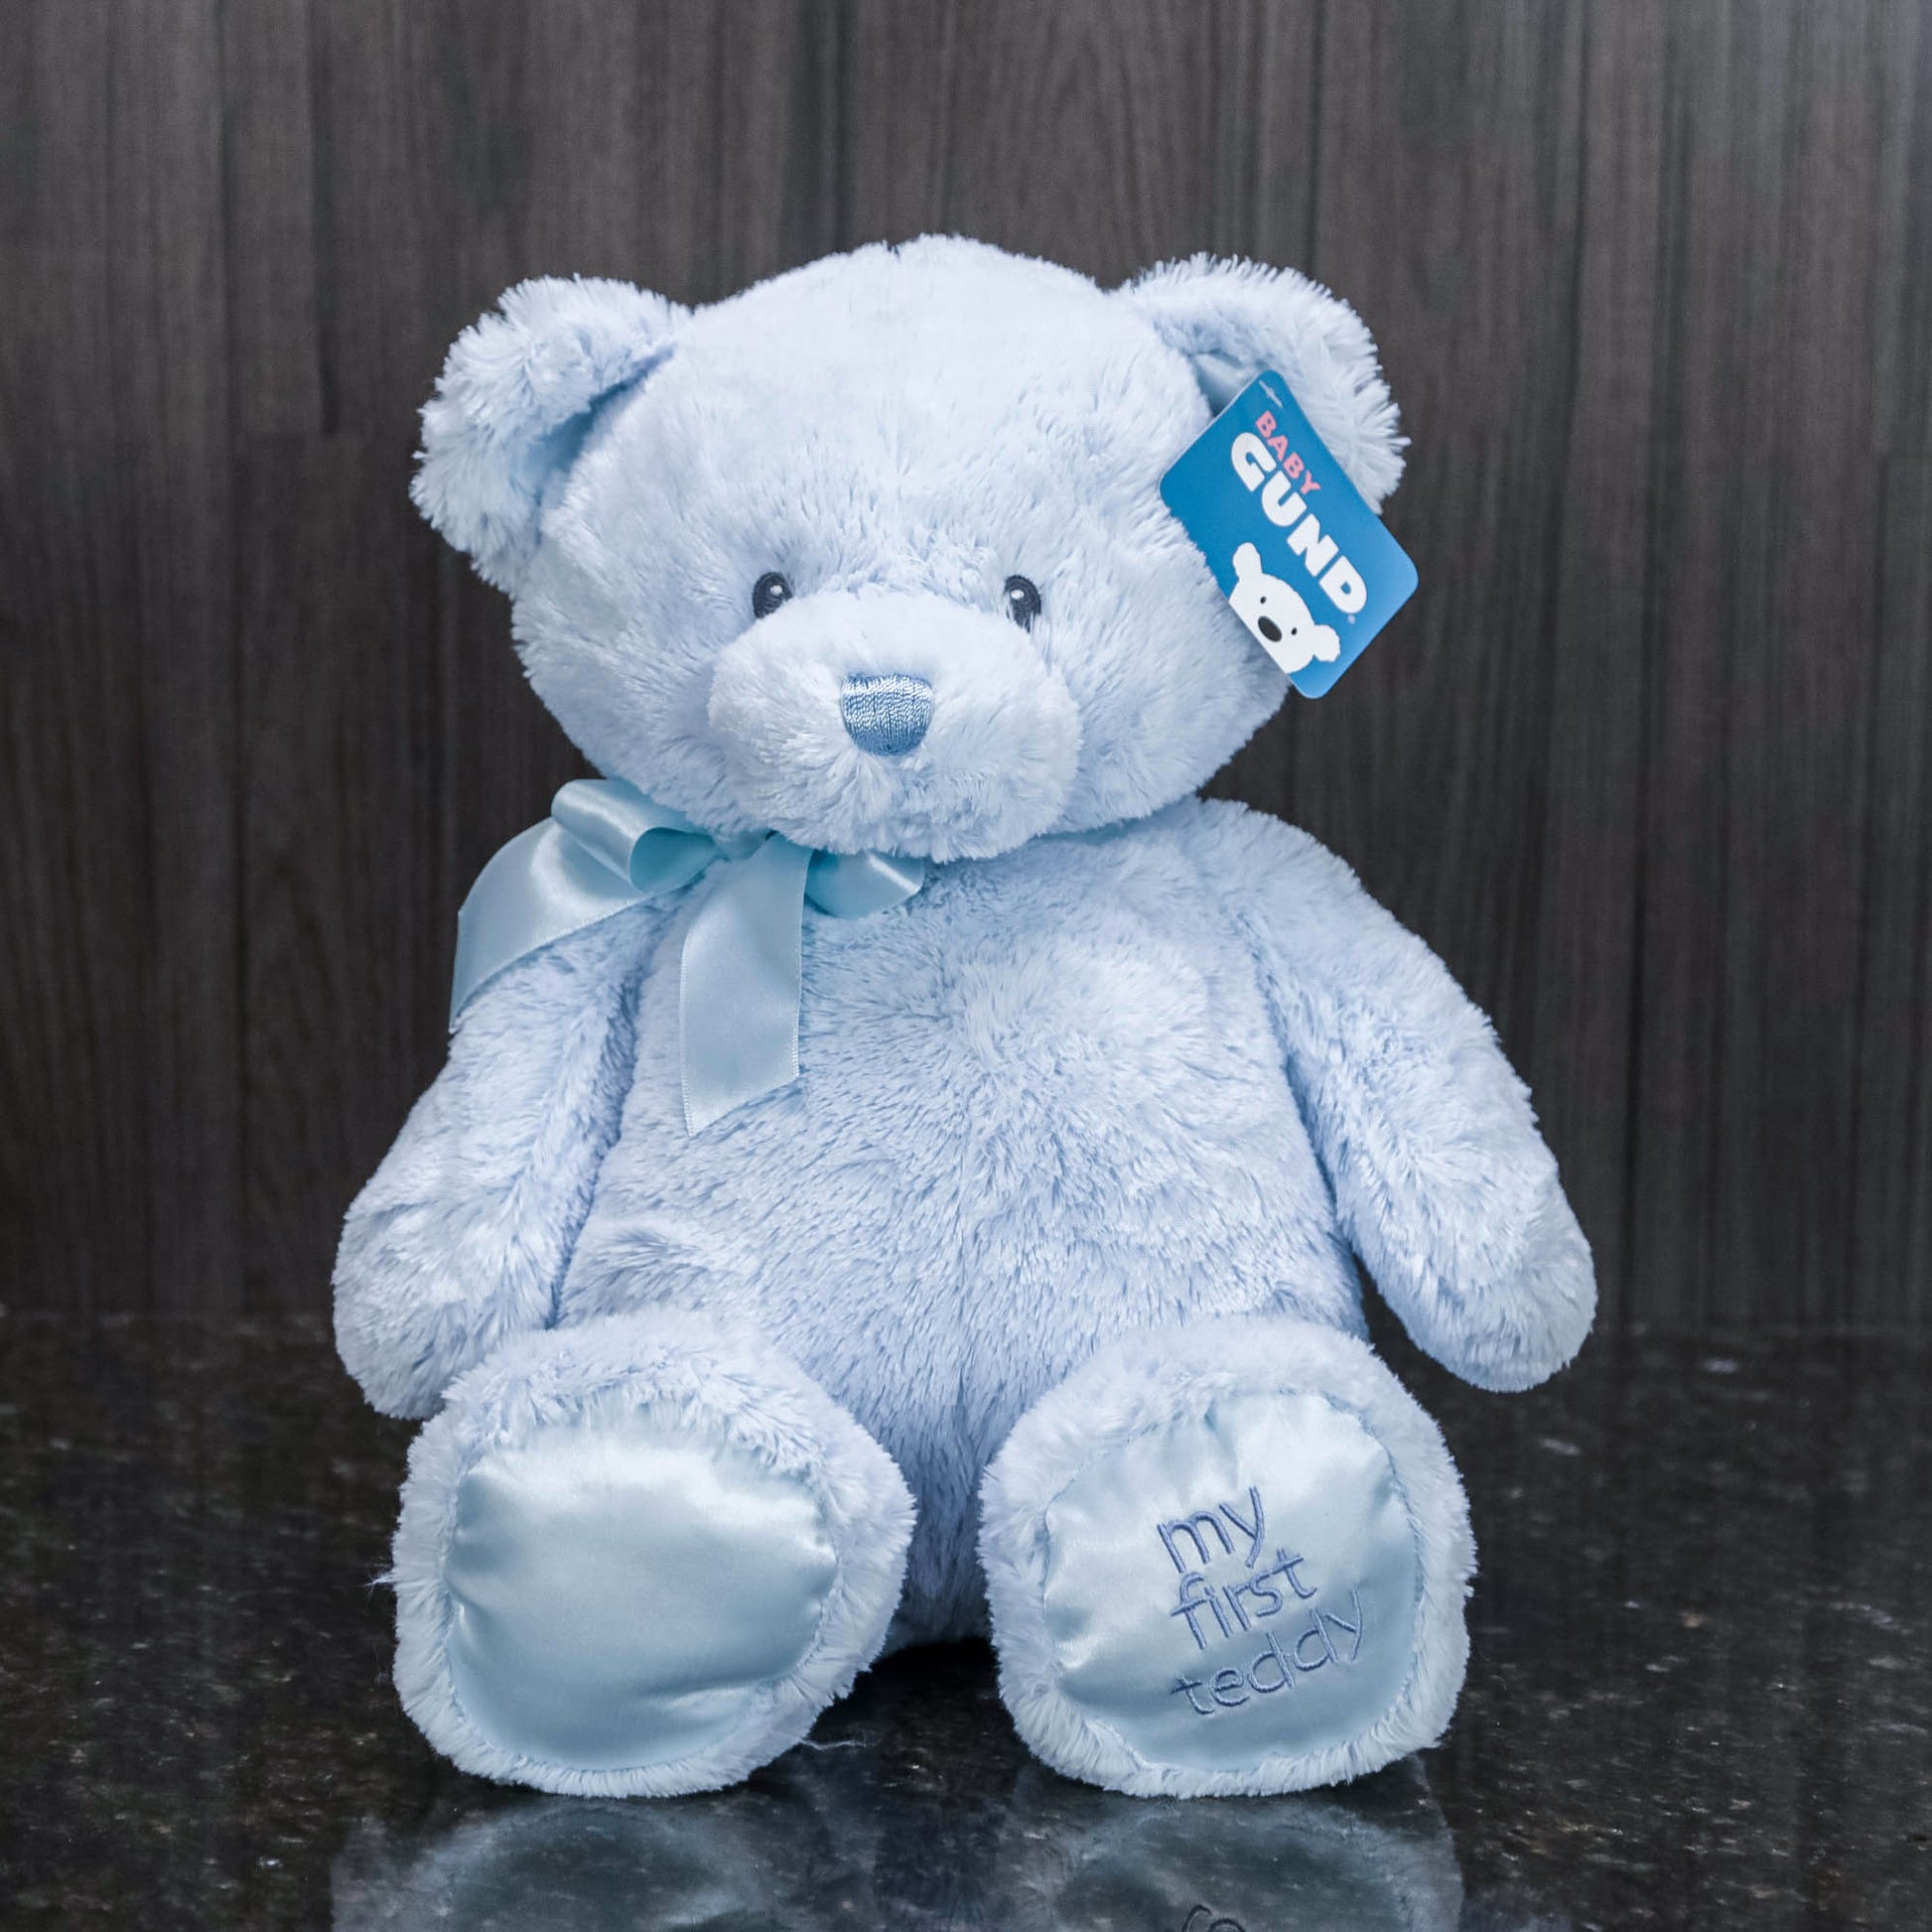 Baby GUND My First Friend Teddy Bear, Blue - Gund